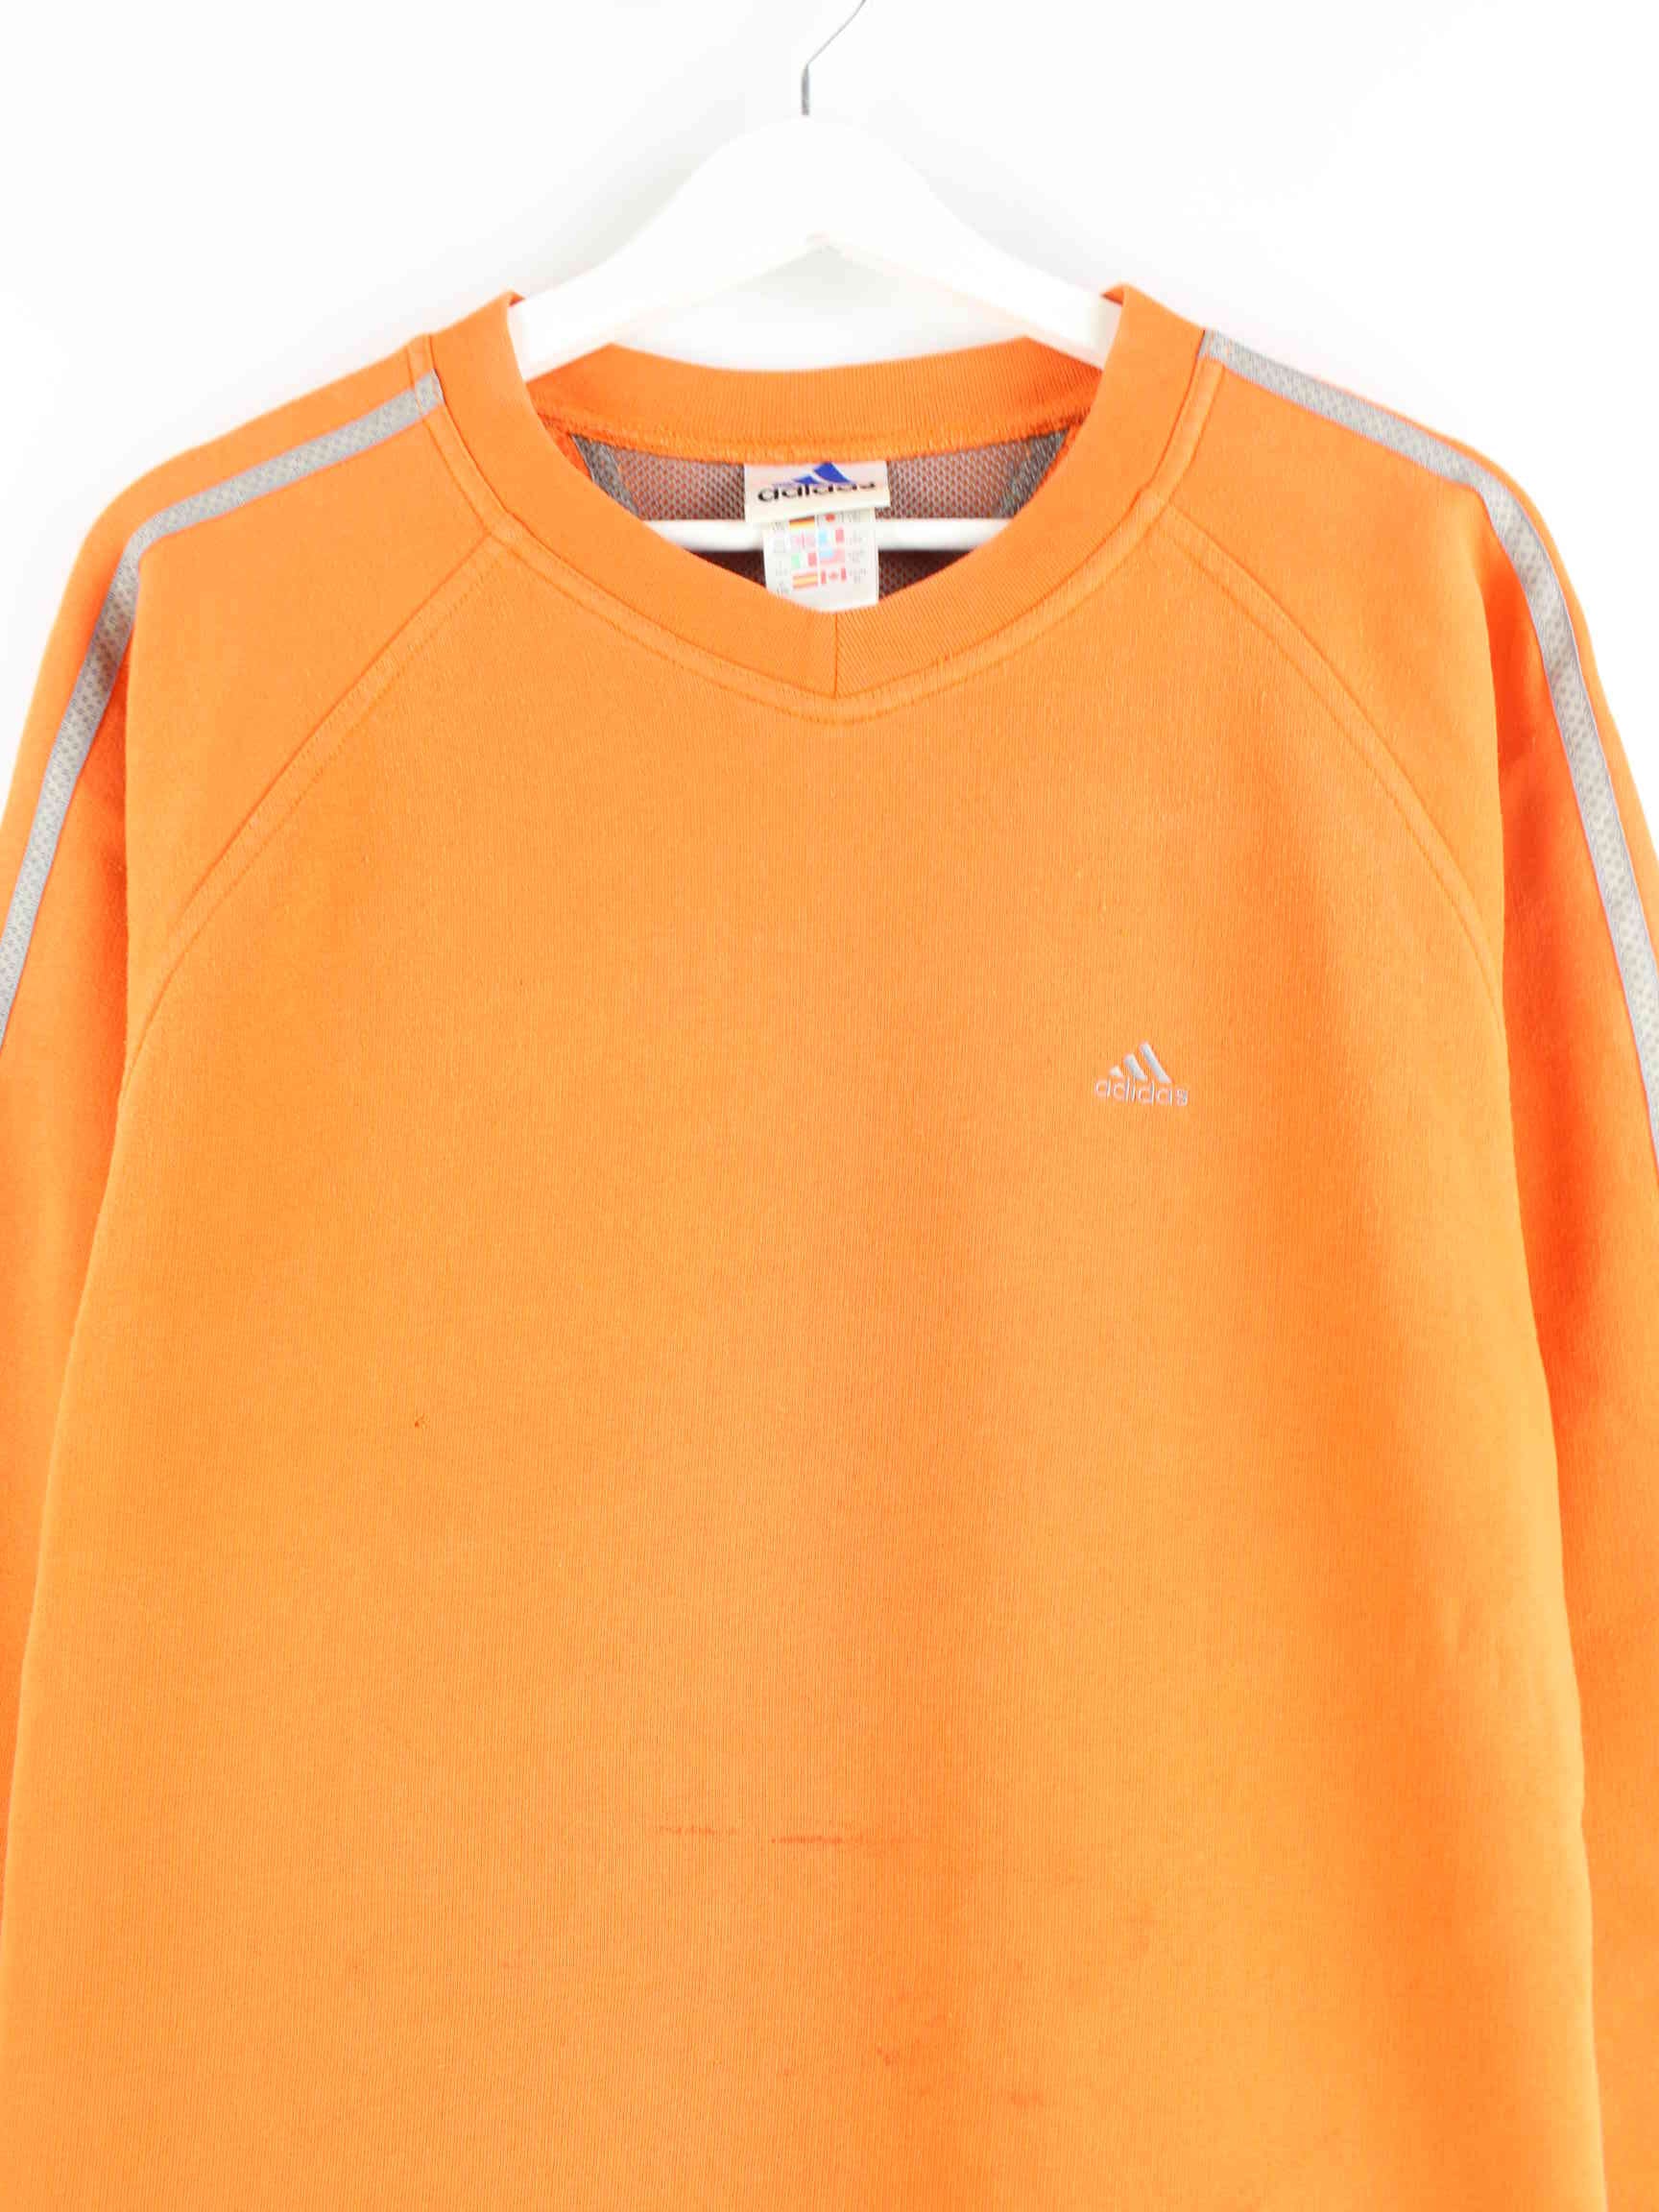 Adidas 90s Vintage Basic Sweater Orange L (detail image 1)